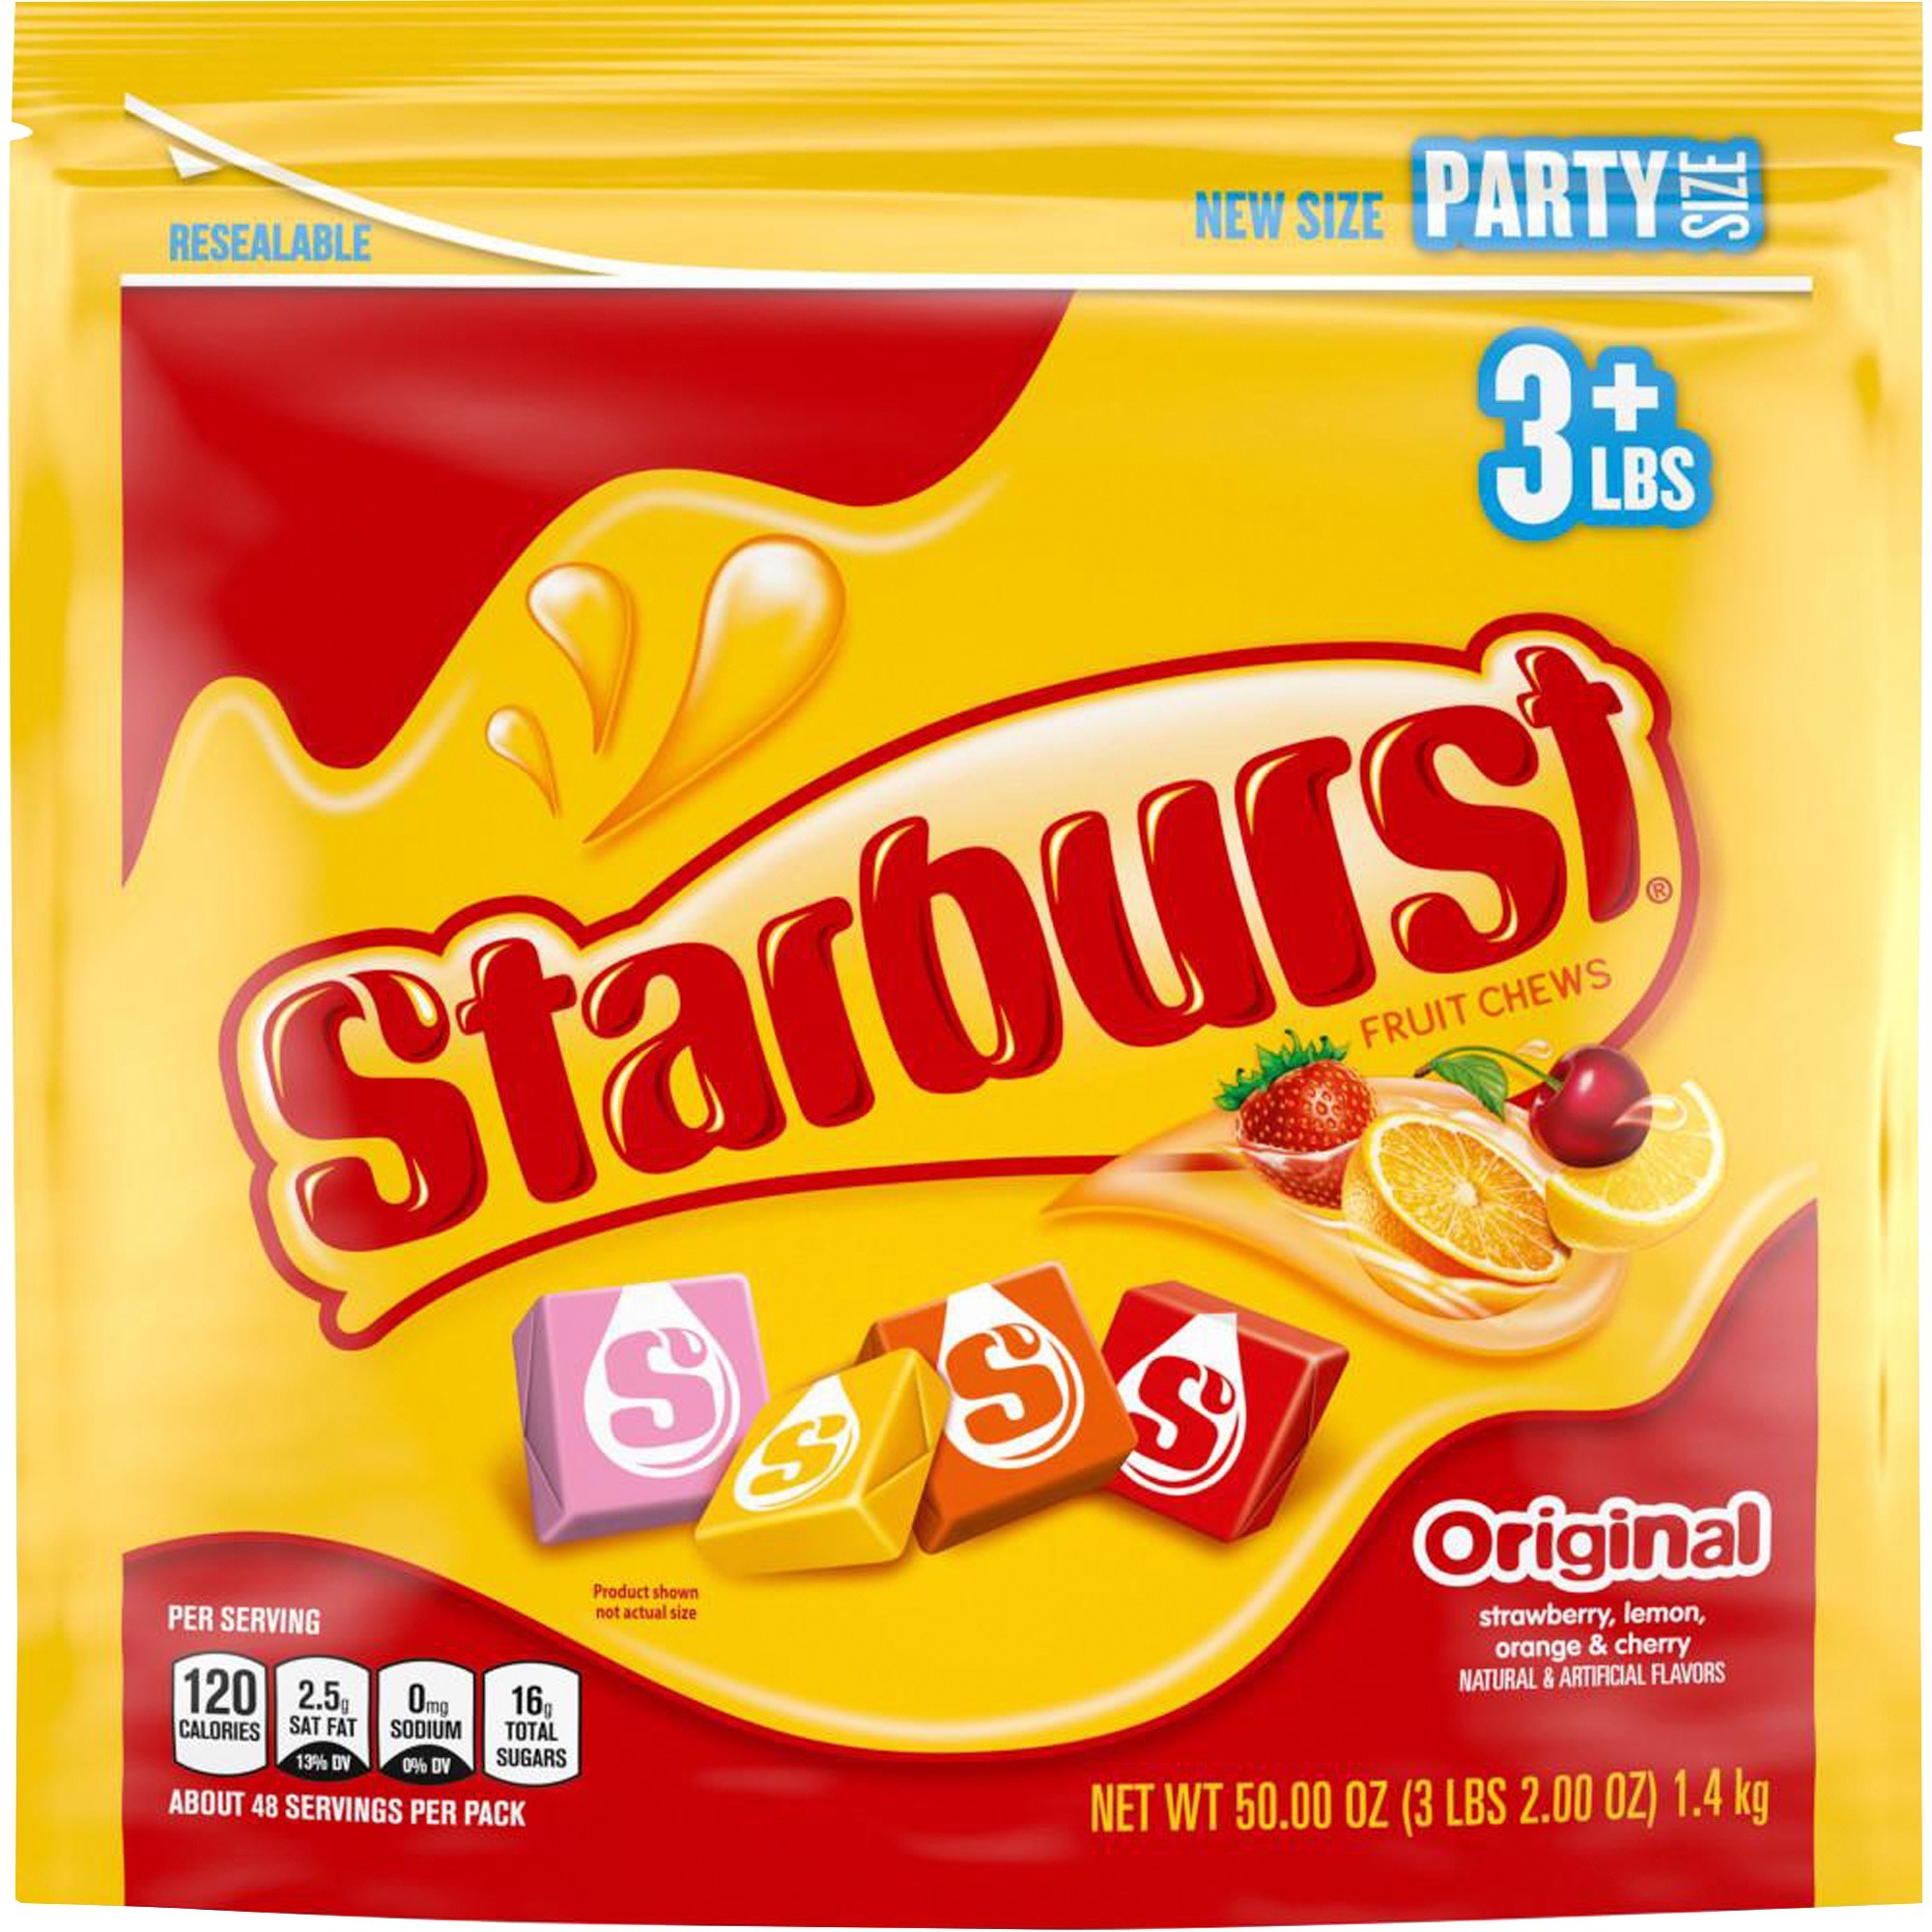 starburst candy grape flavor